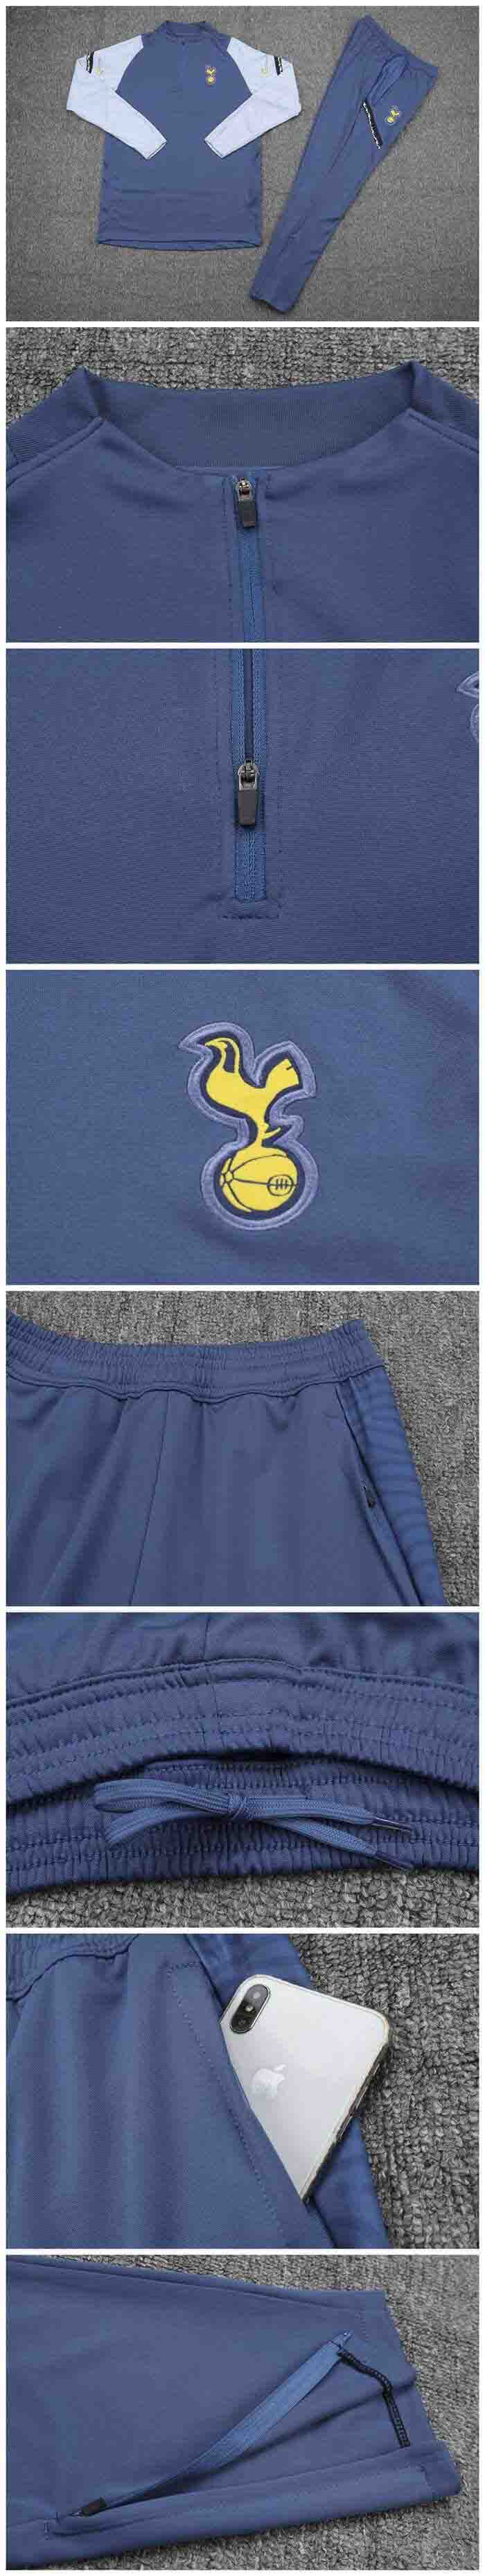 Tottenham Hotspur Zipper Sweatshirt Kit